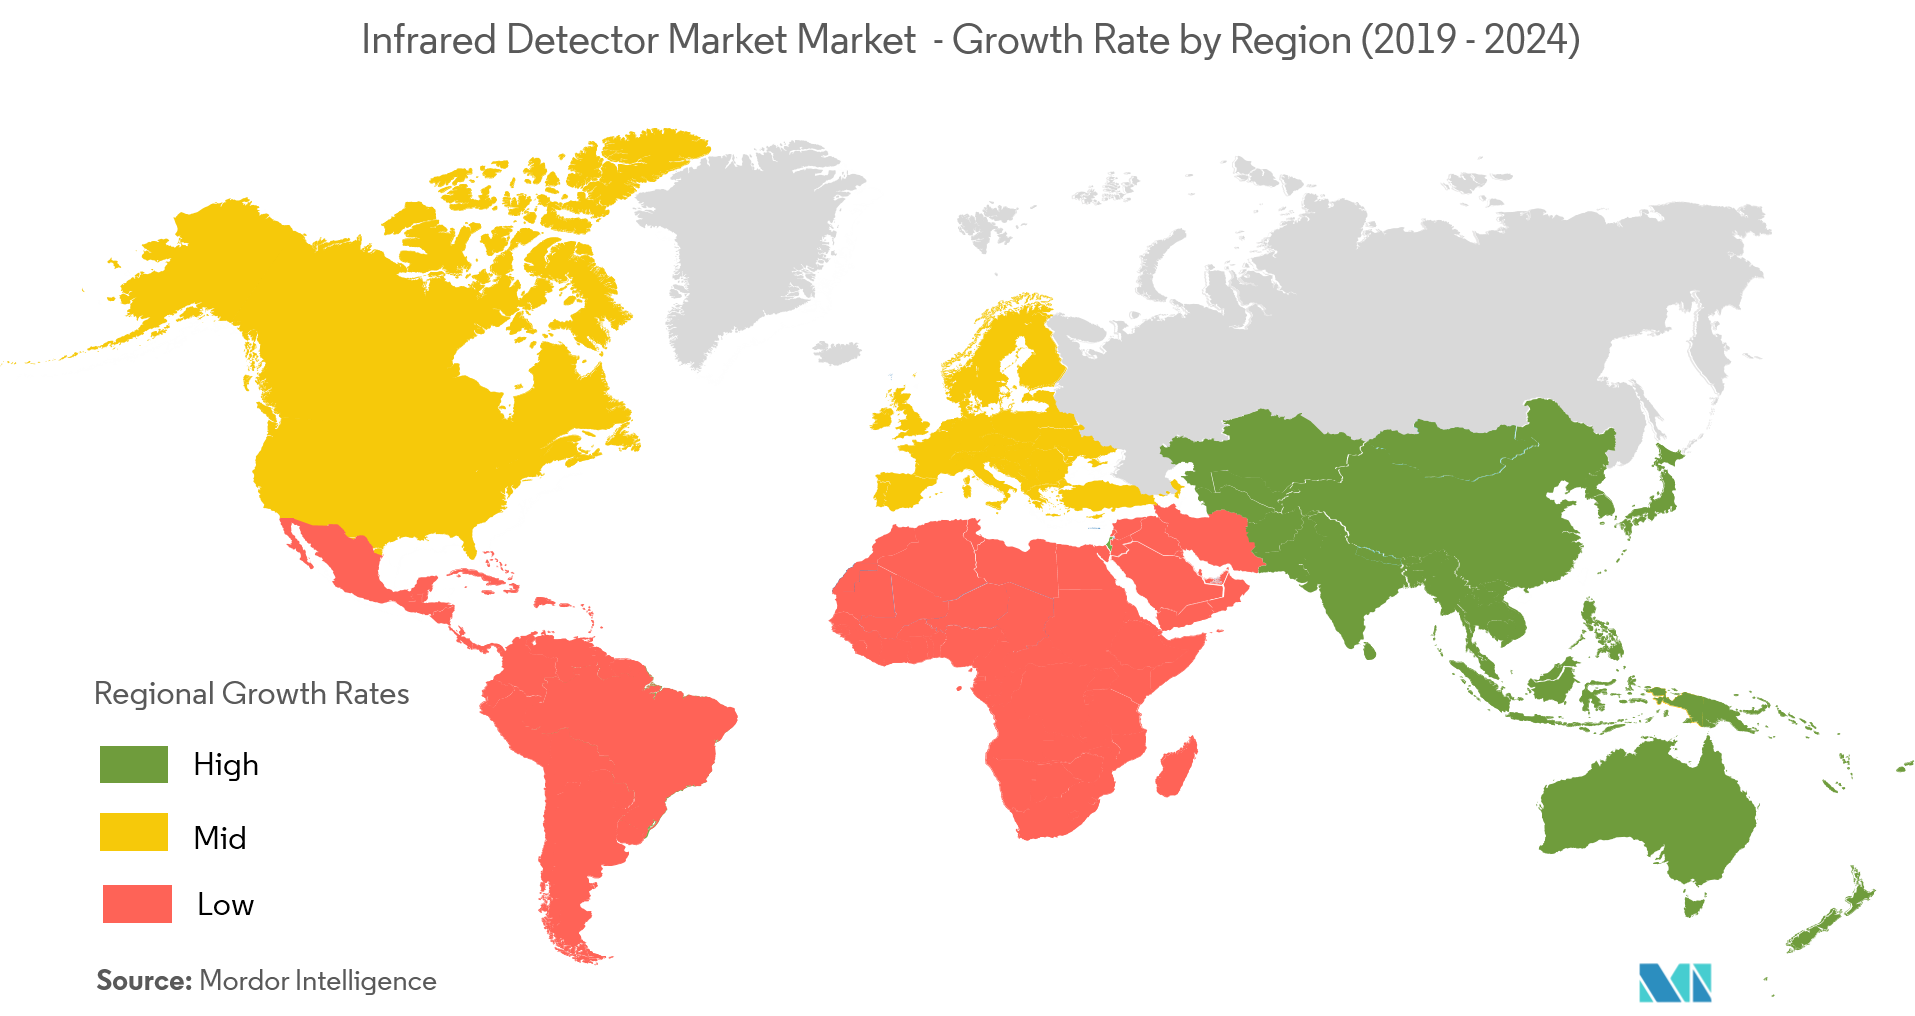 سوق كاشفات الأشعة تحت الحمراء معدل النمو حسب المنطقة (2019-2024)